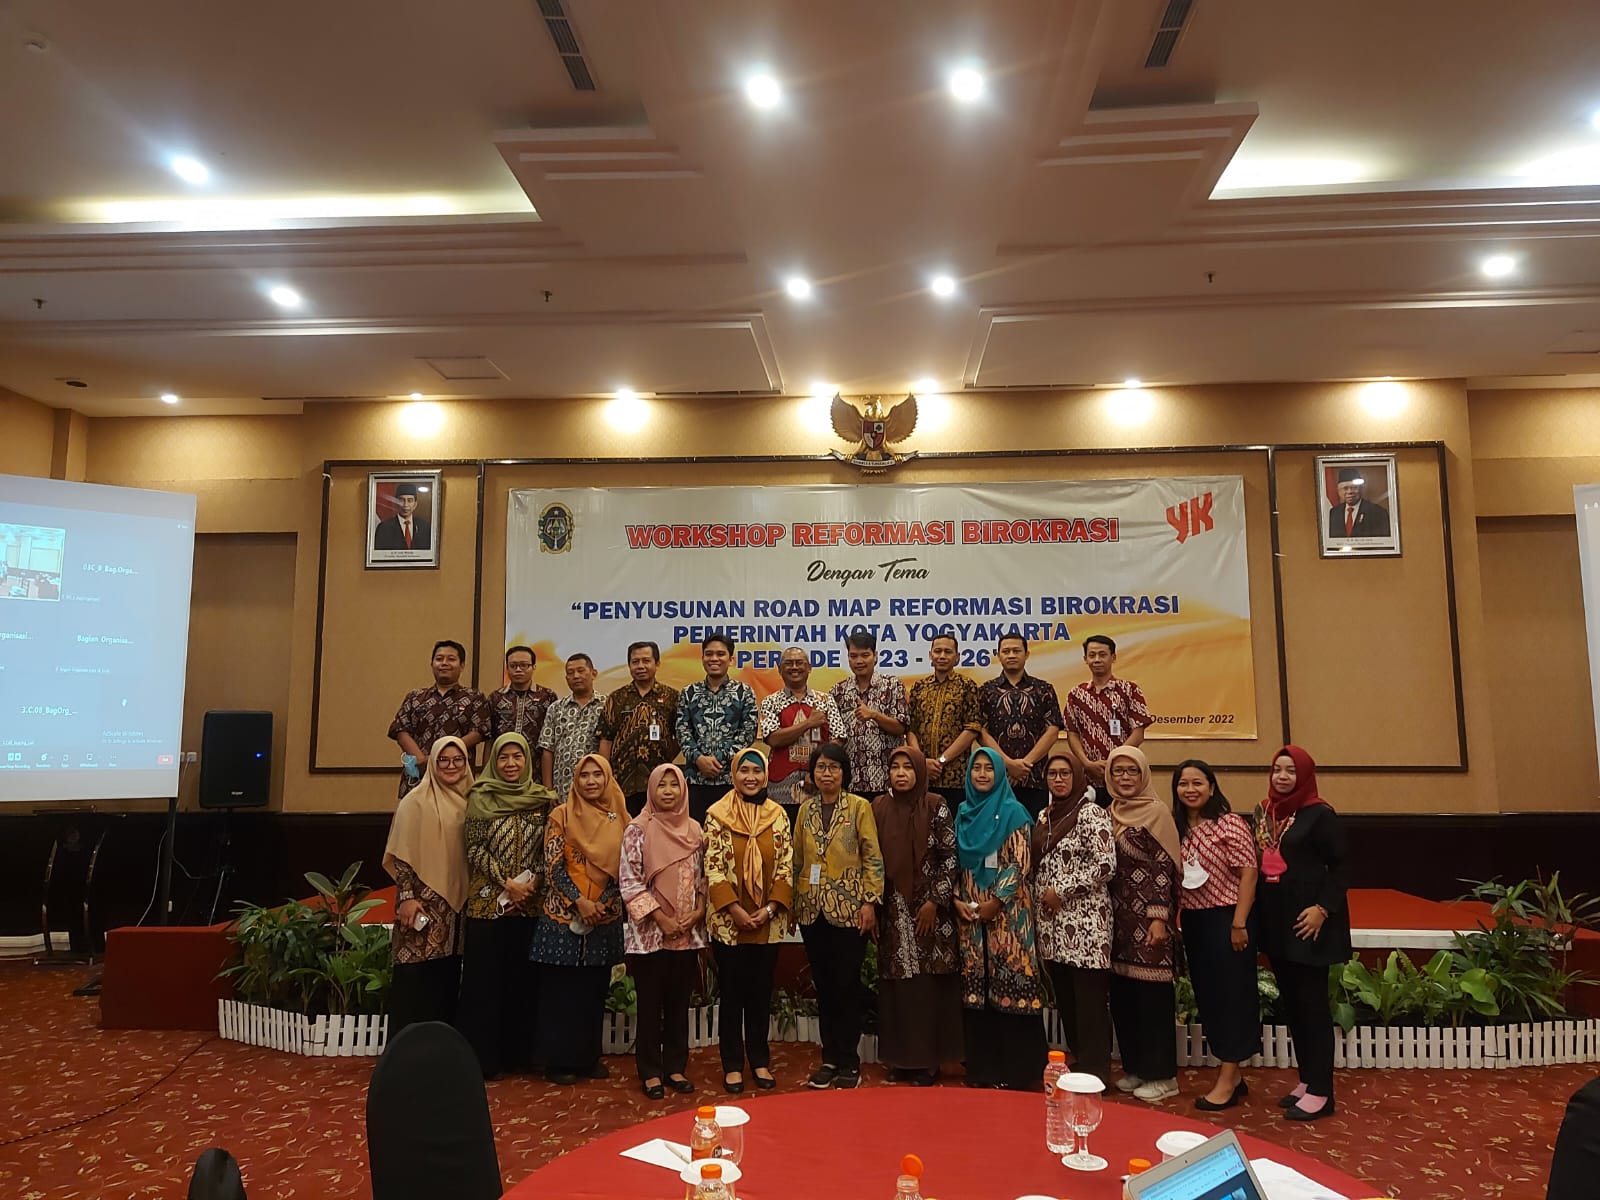 Bagian Organisasi Adakan Workshop Reformasi Birokrasi dengan Tema Penyusunan Road Map Reformasi Birokrasi Pemerintah Kota Yogyakarta Periode 2023-2026